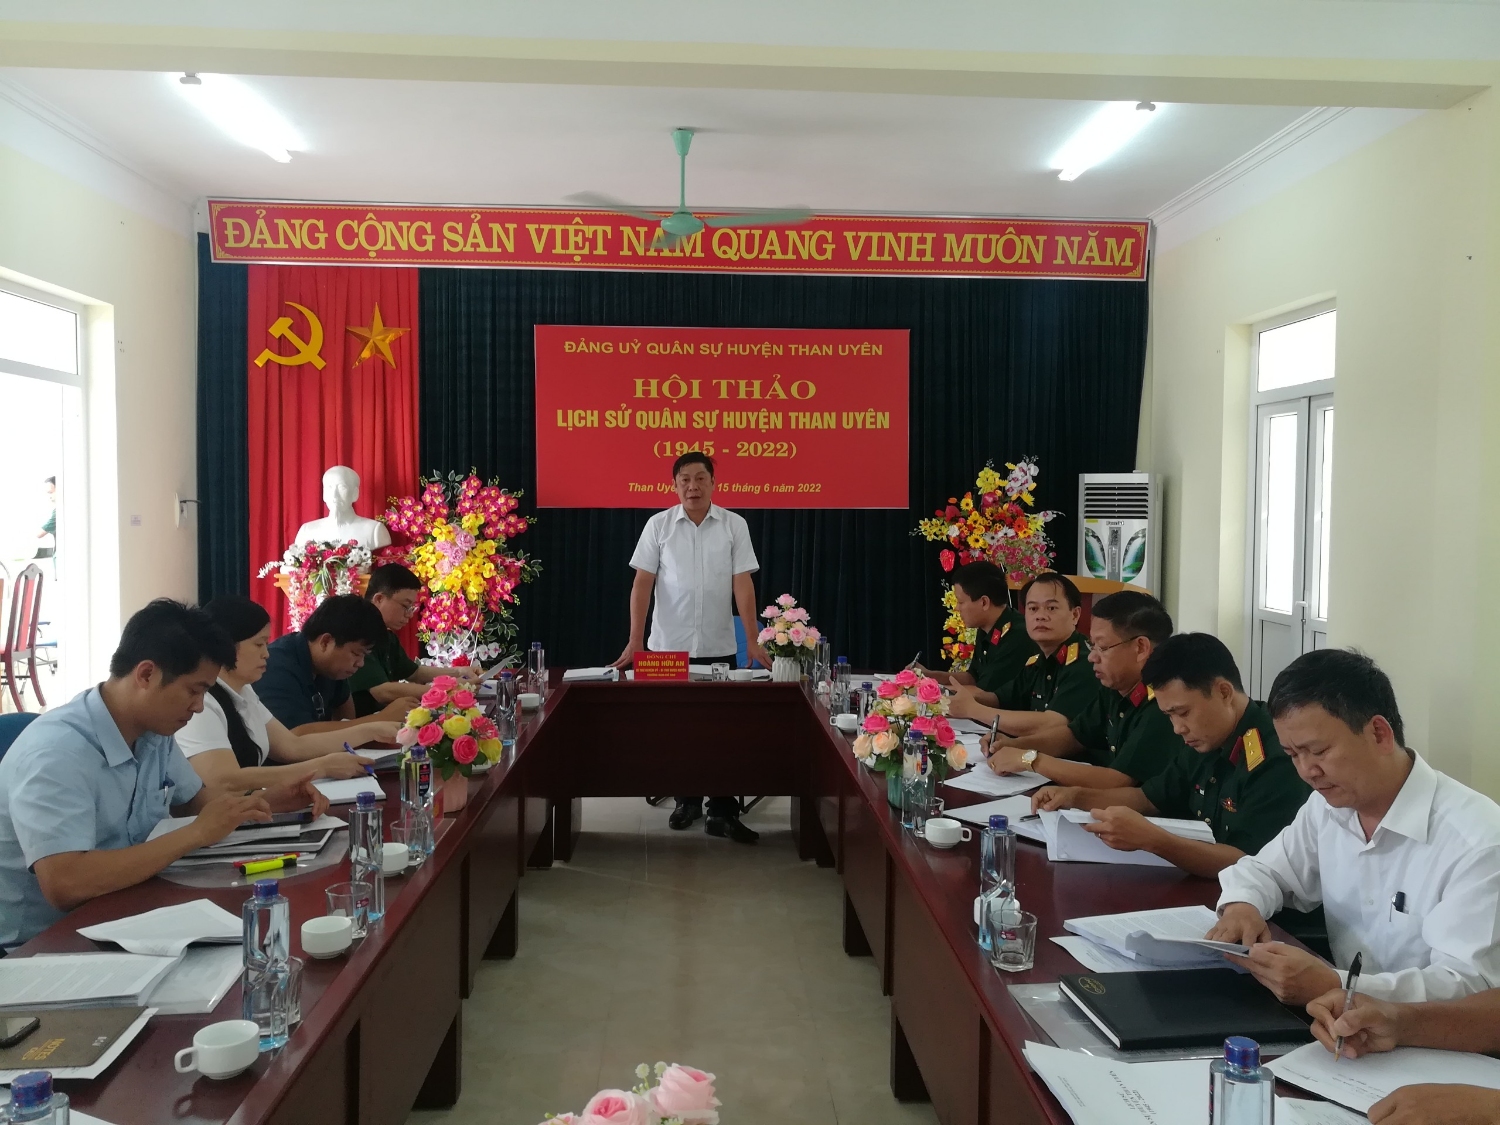 Đồng chí Hoàng Hữu An - TUV, Bí thư Huyện ủy, Chủ tịch HĐND huyện, Bí thư Đảng ủy Quân sự huyện Than Uyên  kết luận Hội thảo